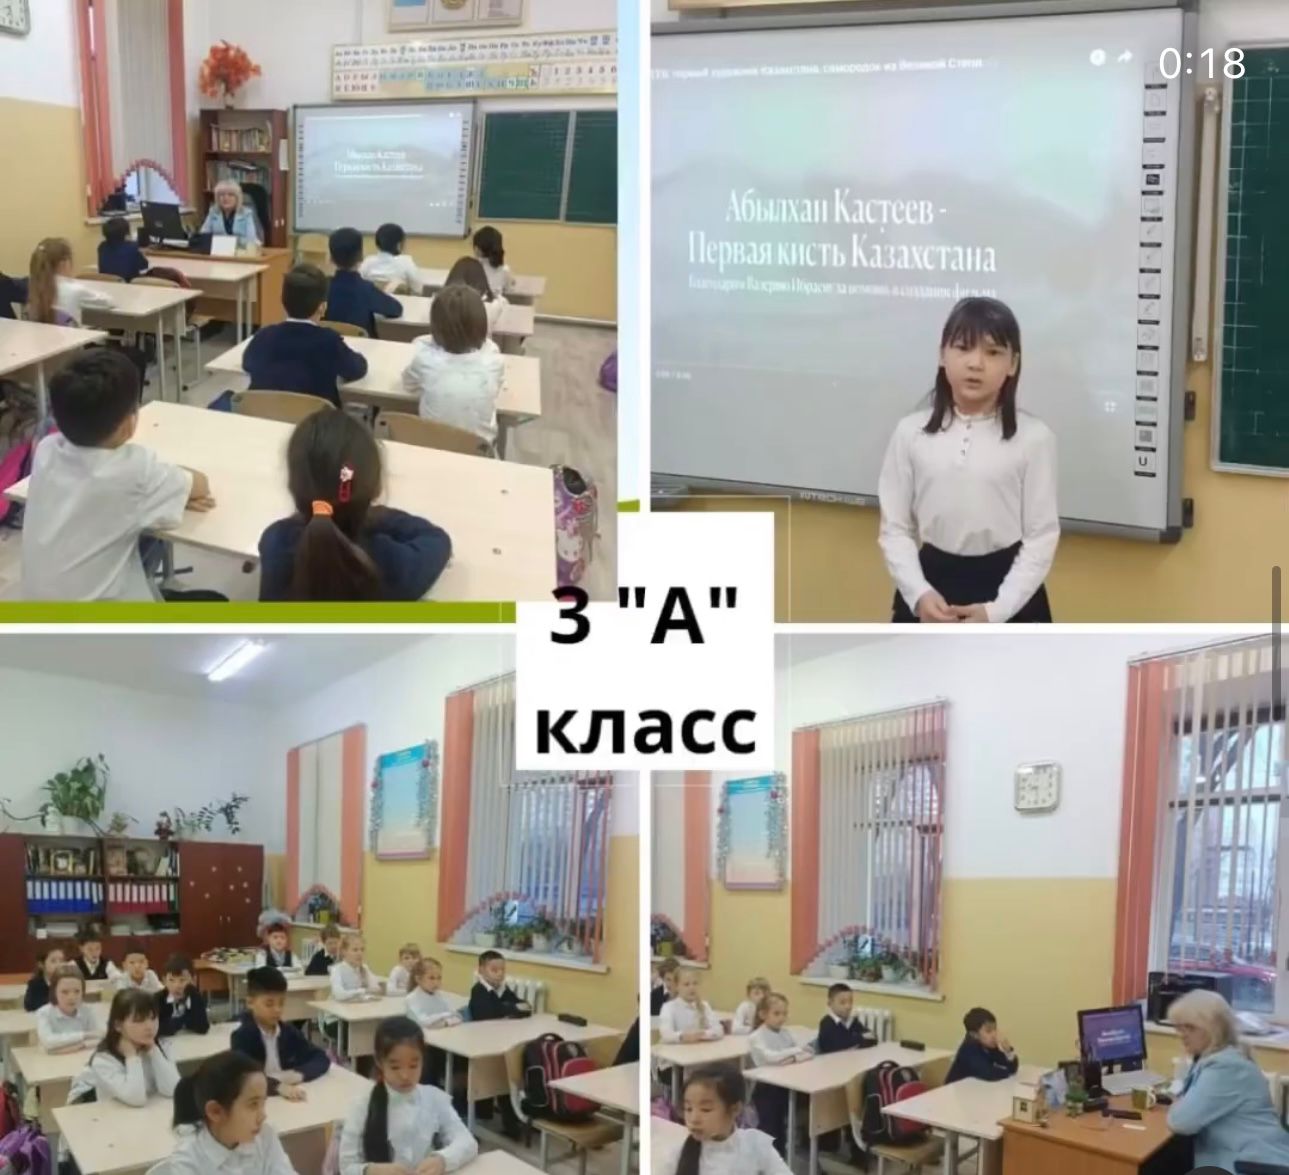 Провела классный час на тему: "Абылхан Кастеев-Первая кисть Казахстана".